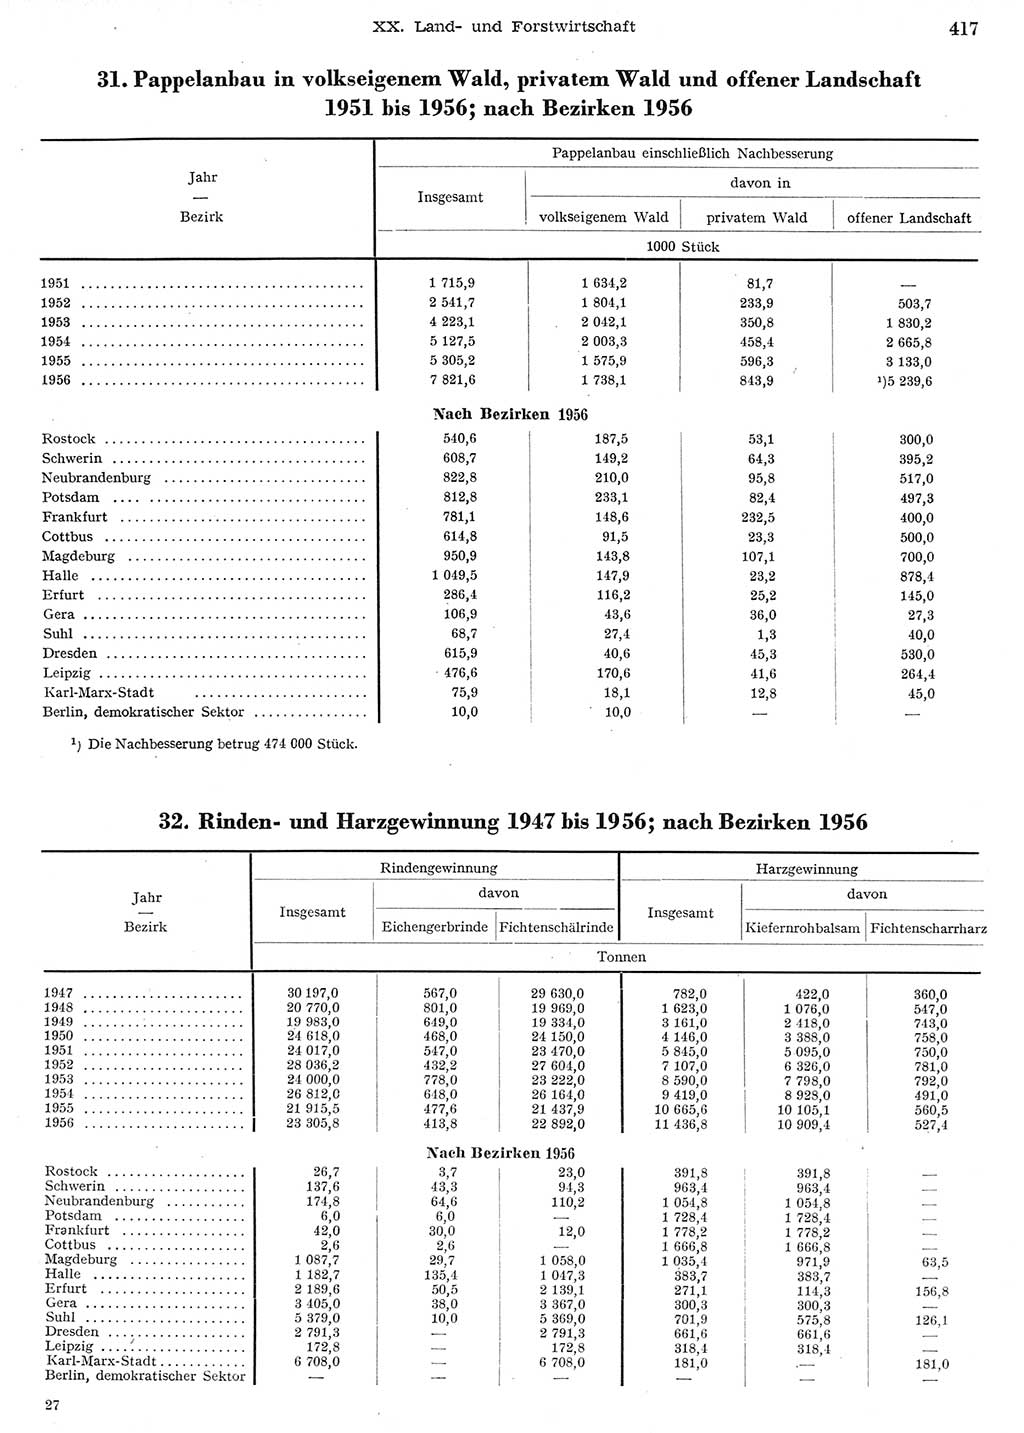 Statistisches Jahrbuch der Deutschen Demokratischen Republik (DDR) 1956, Seite 417 (Stat. Jb. DDR 1956, S. 417)